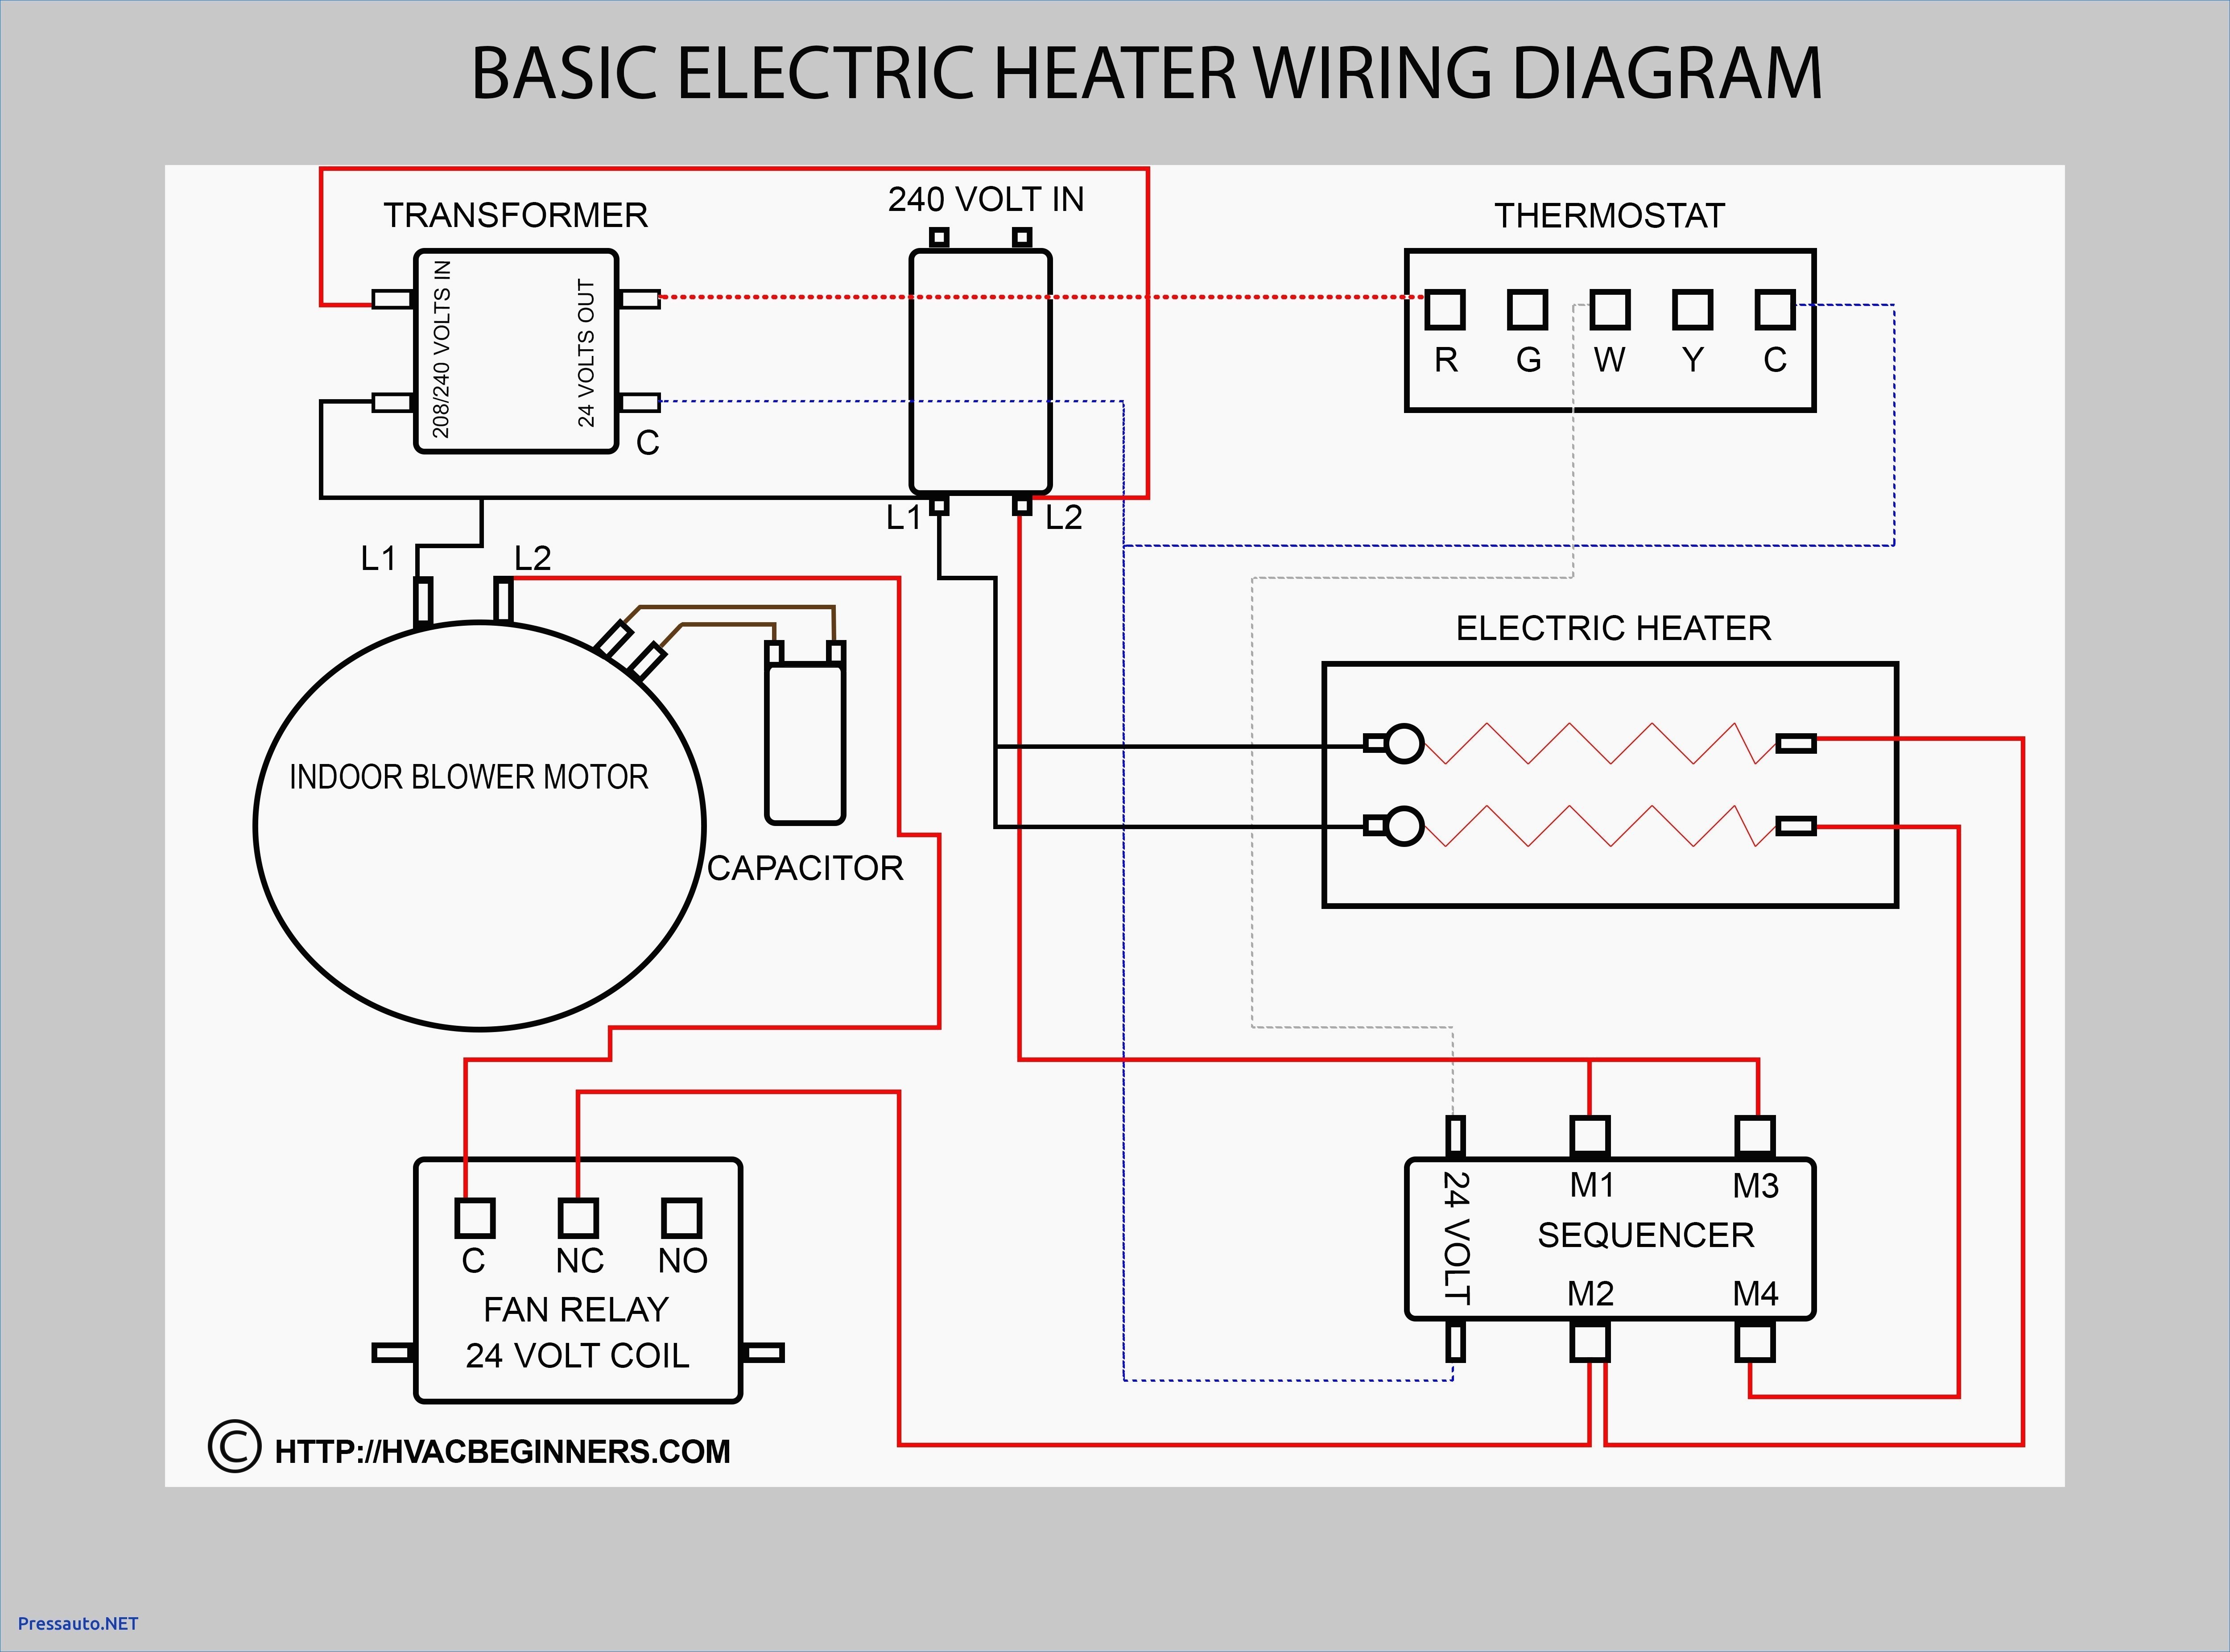 water feeder steam boiler diagram boiler electrical diagram boiler system schematic electric heat